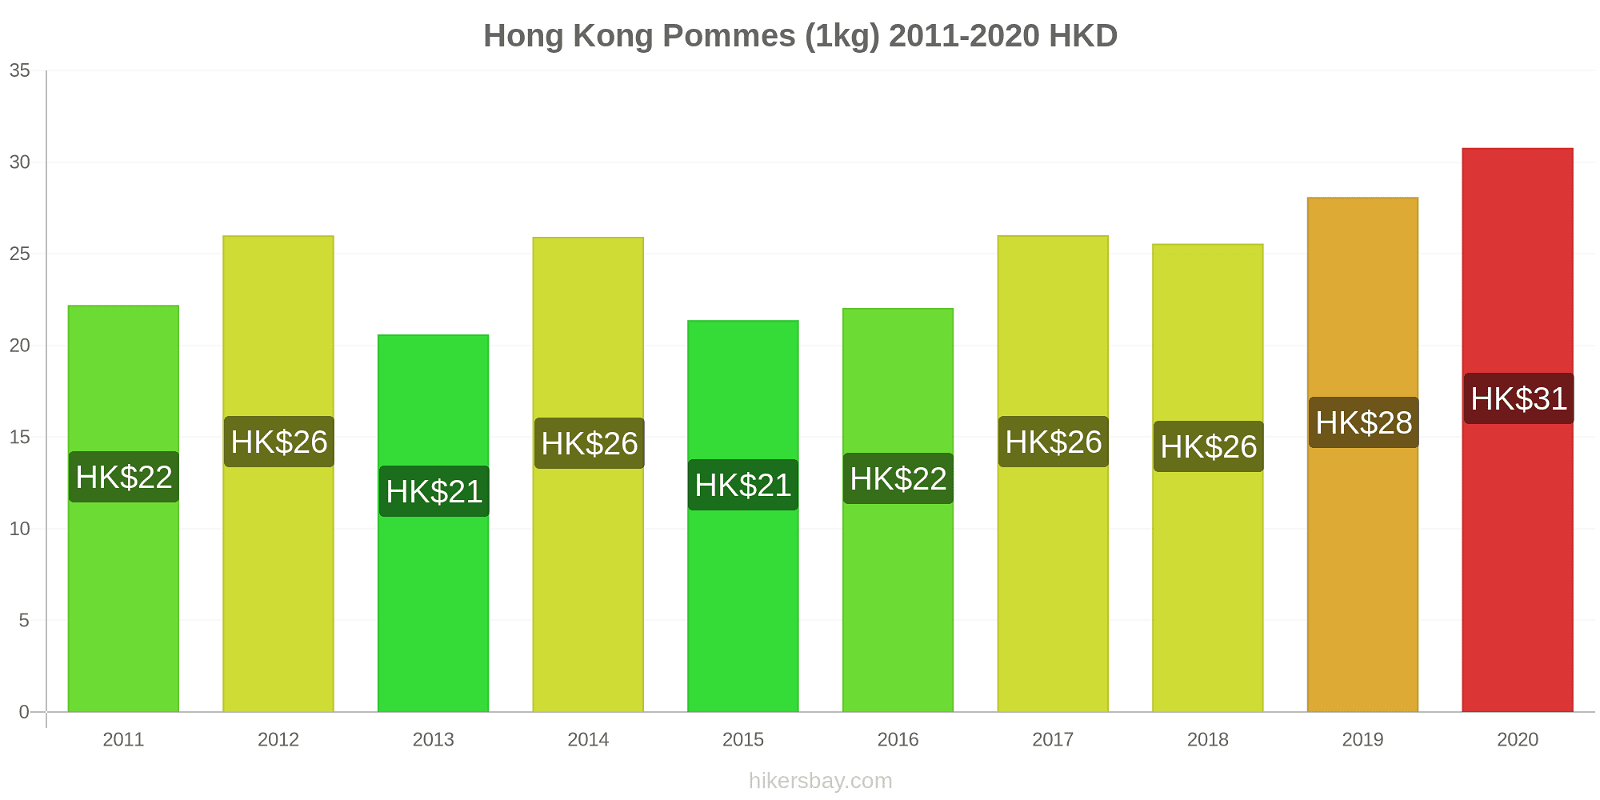 Hong Kong changements de prix Pommes (1kg) hikersbay.com